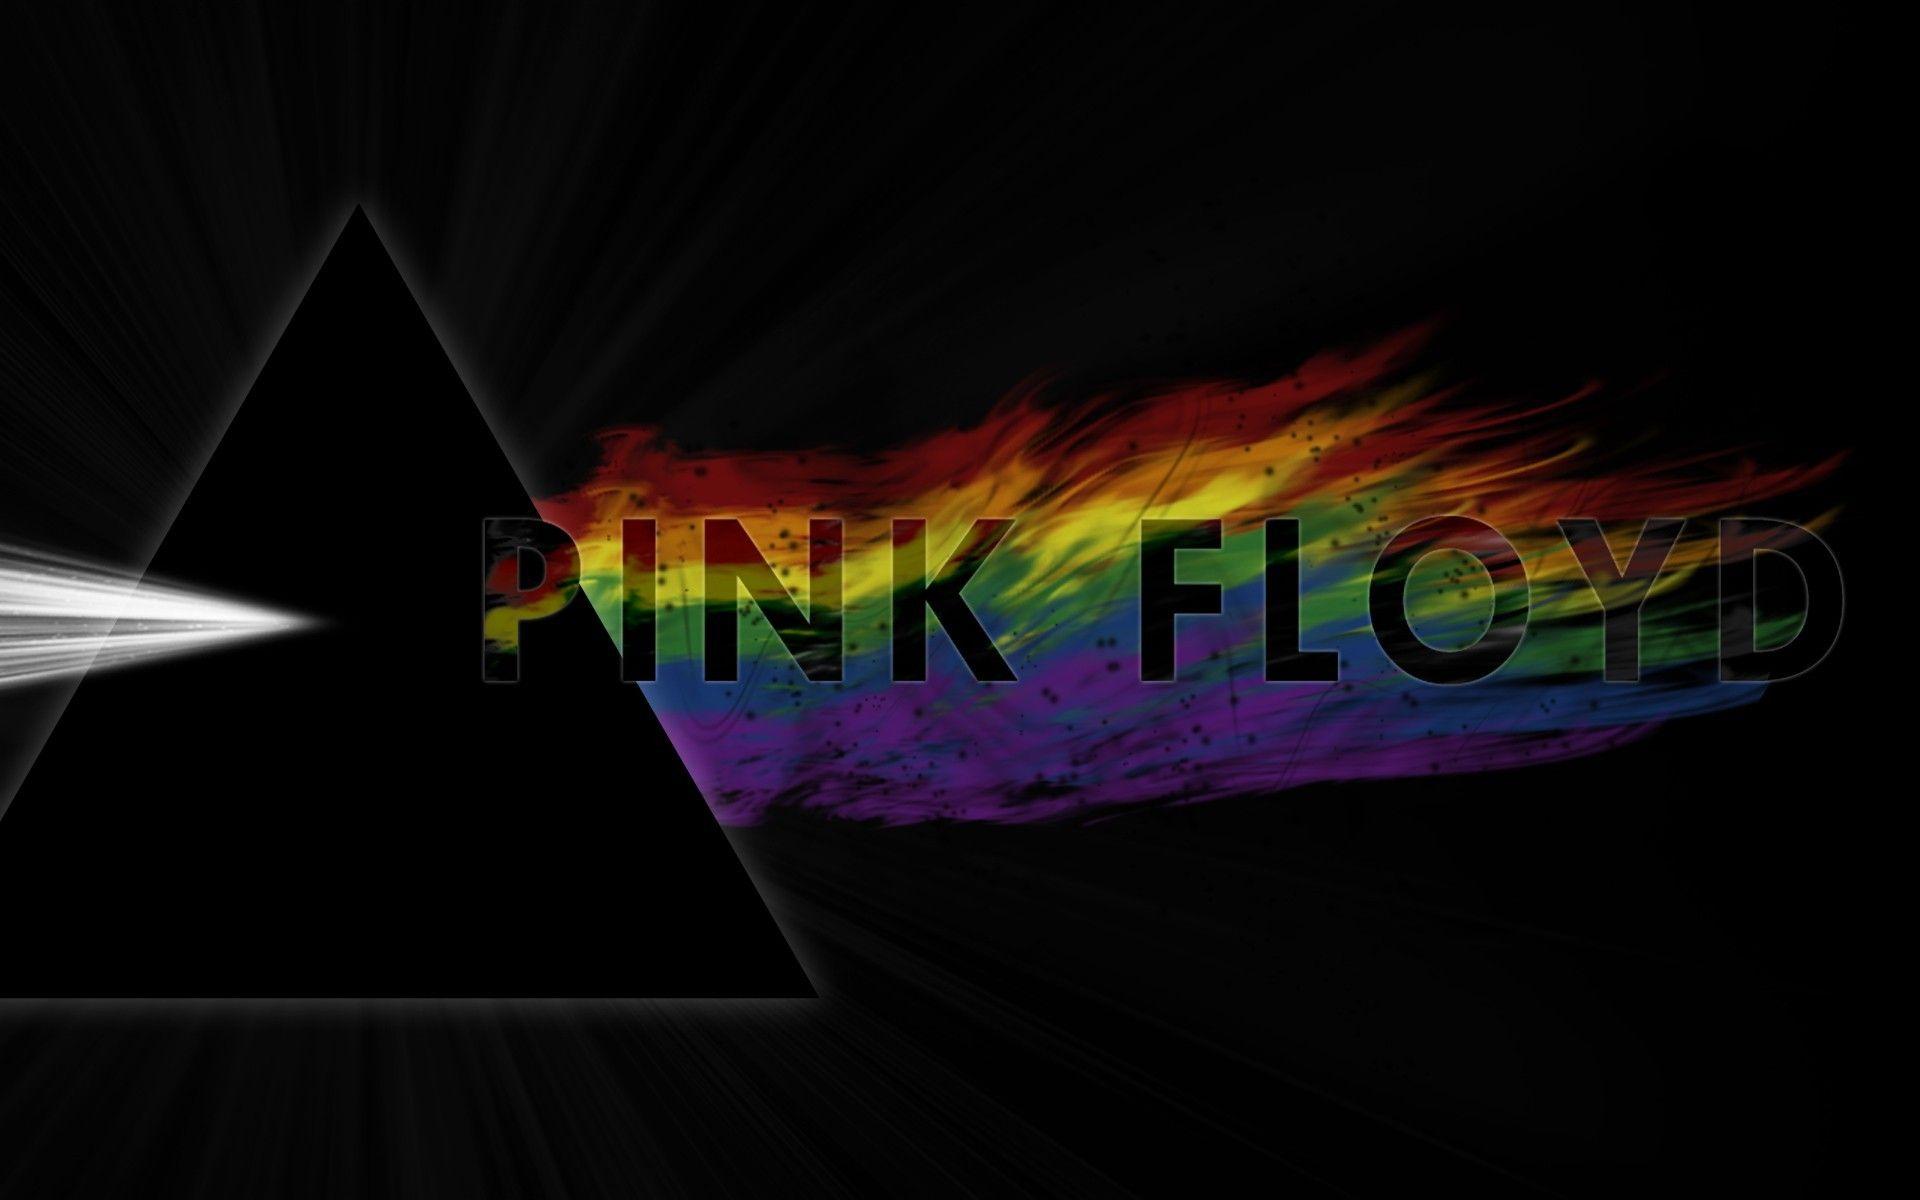 Music pink floyd logos wallpaper. PC